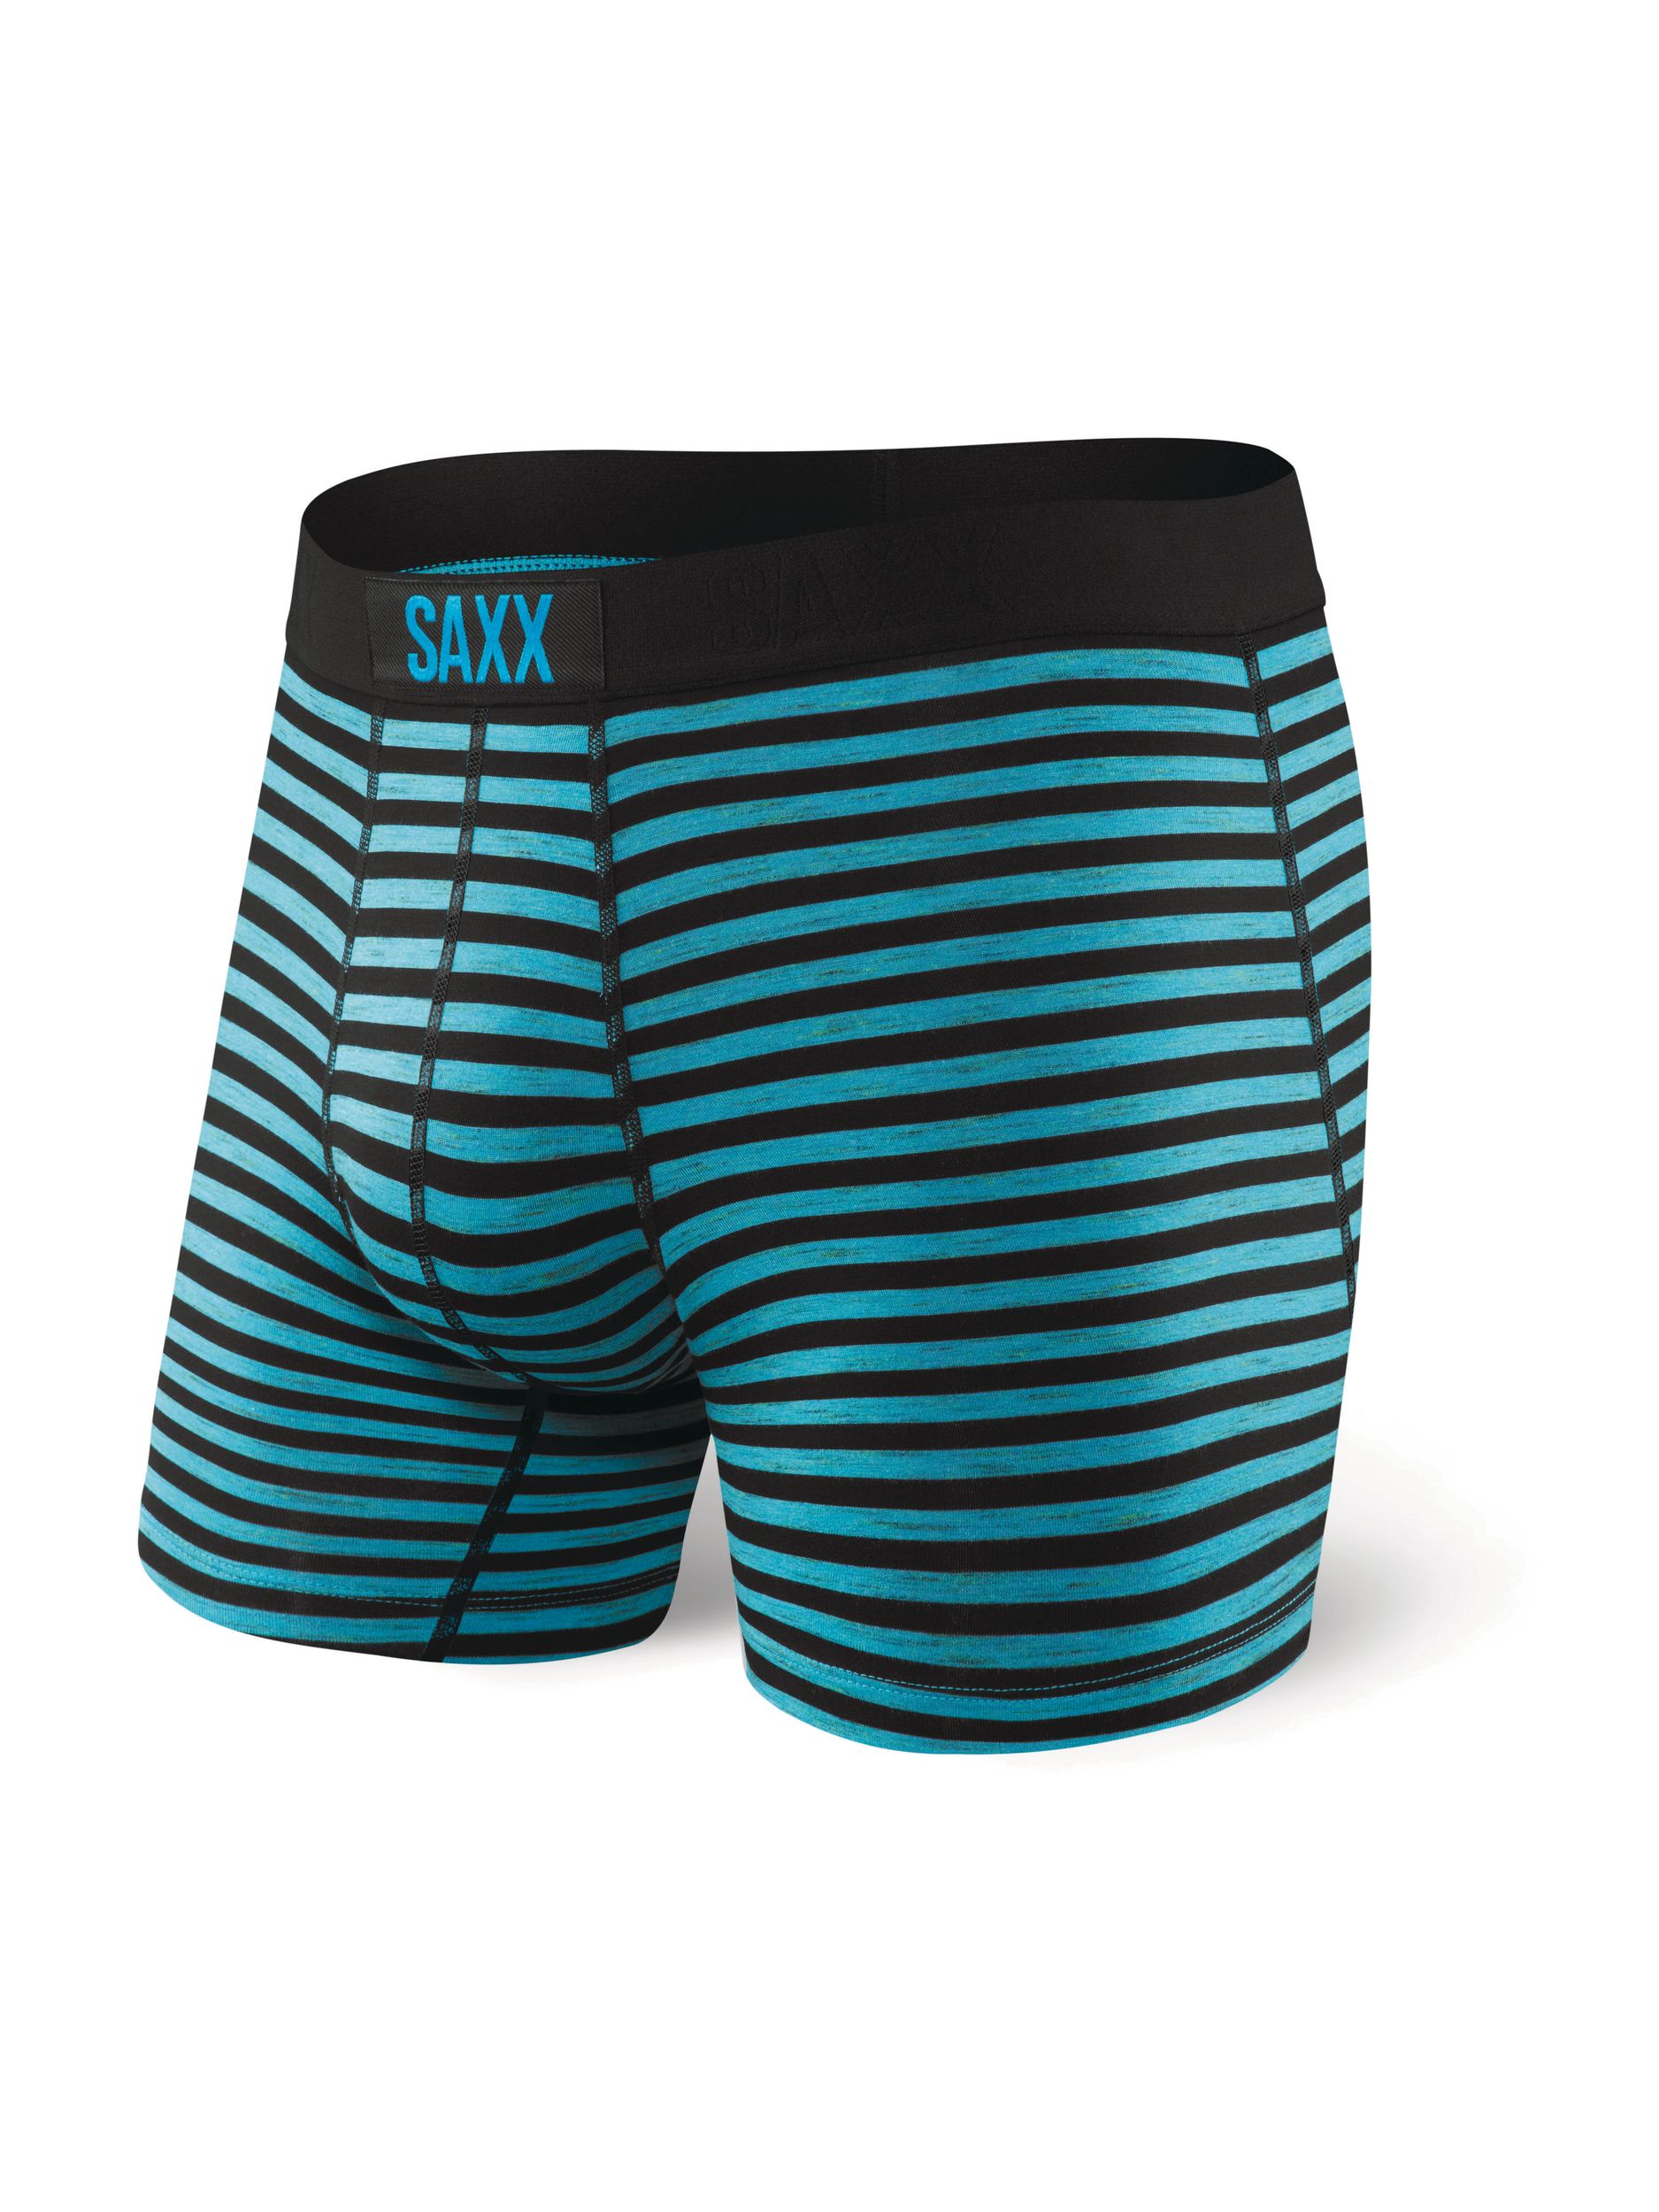 SAXX Vibe Men's Boxer Brief, Underwear, Breathable, Modern Fit | SportChek